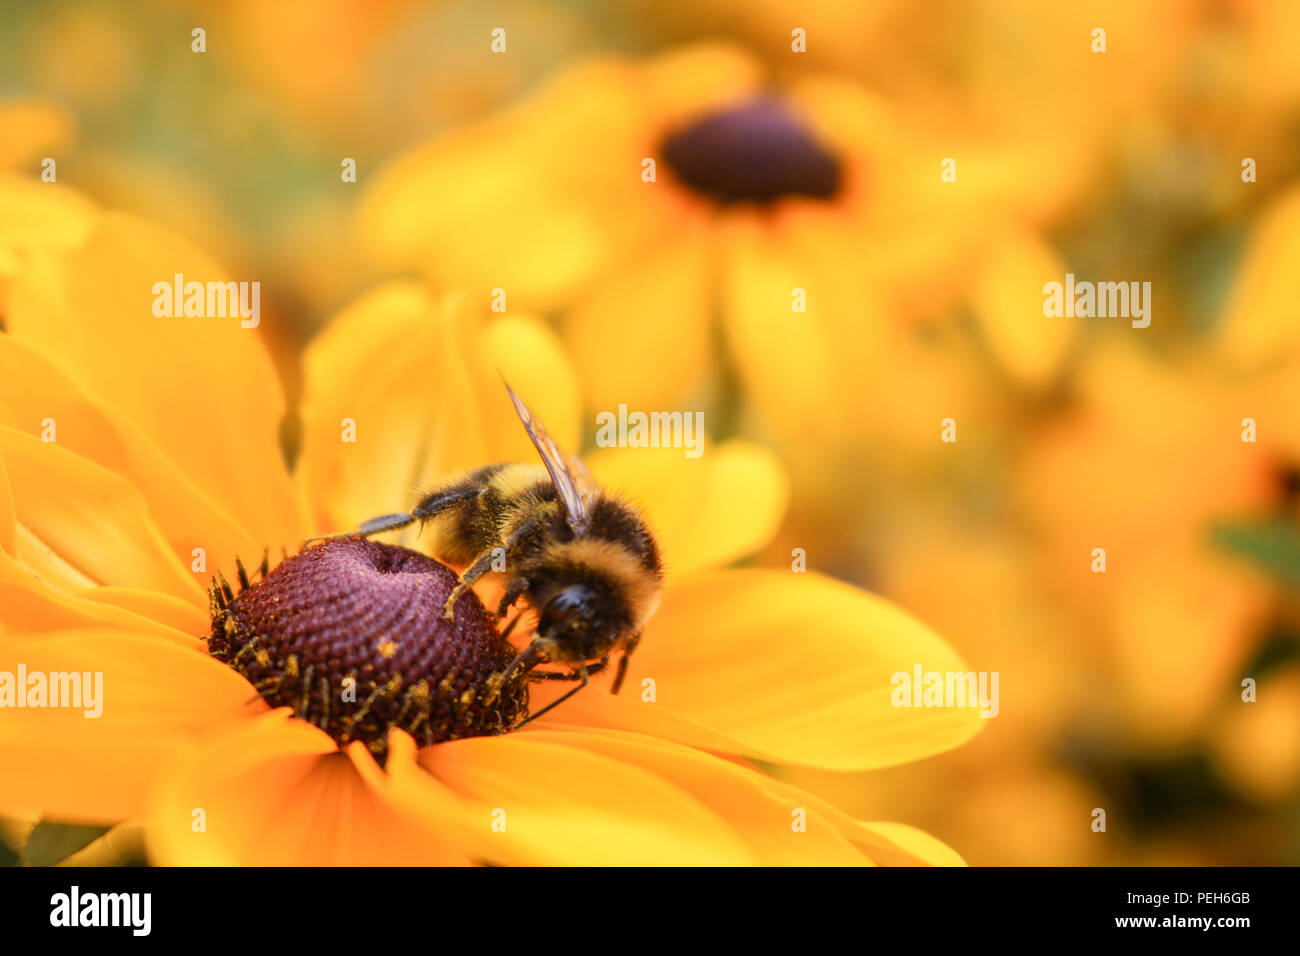 Londres, 15 de agosto de 2018. El clima del REINO UNIDO: Las abejas de miel, recogiendo el néctar de las flores y alimentándose de una 'Rudbeckia hirta' comúnmente conocida como Gloriosa Daisy en un día caluroso de verano el crédito: amer ghazzal/Alamy Live News Foto de stock